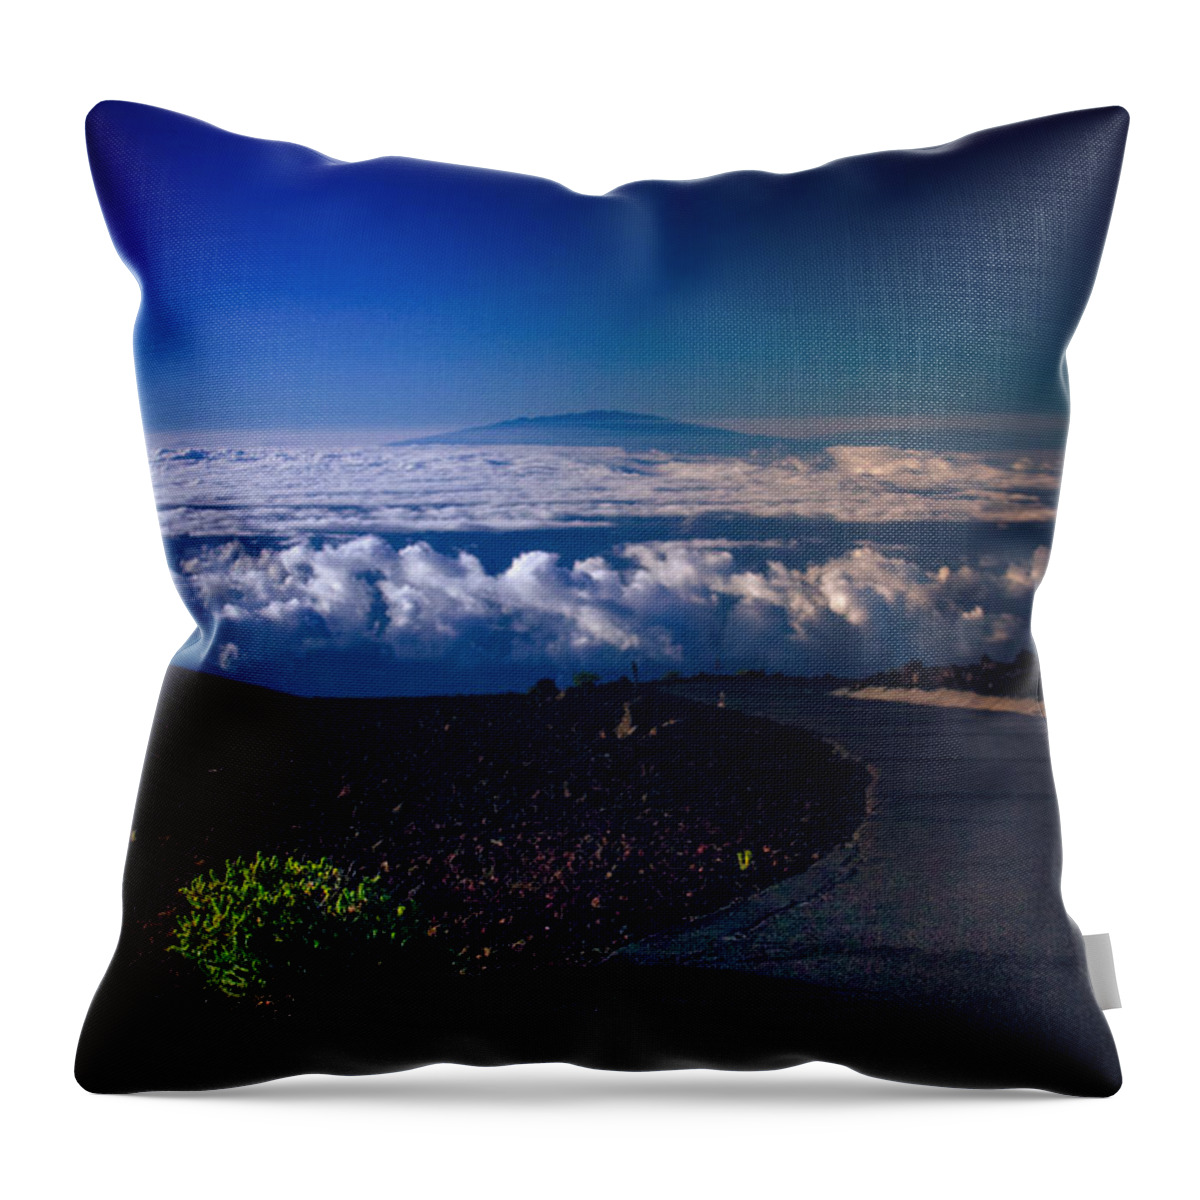 Haleakala Throw Pillow featuring the photograph Haleakala Maui Hawaii #2 by Sharon Mau